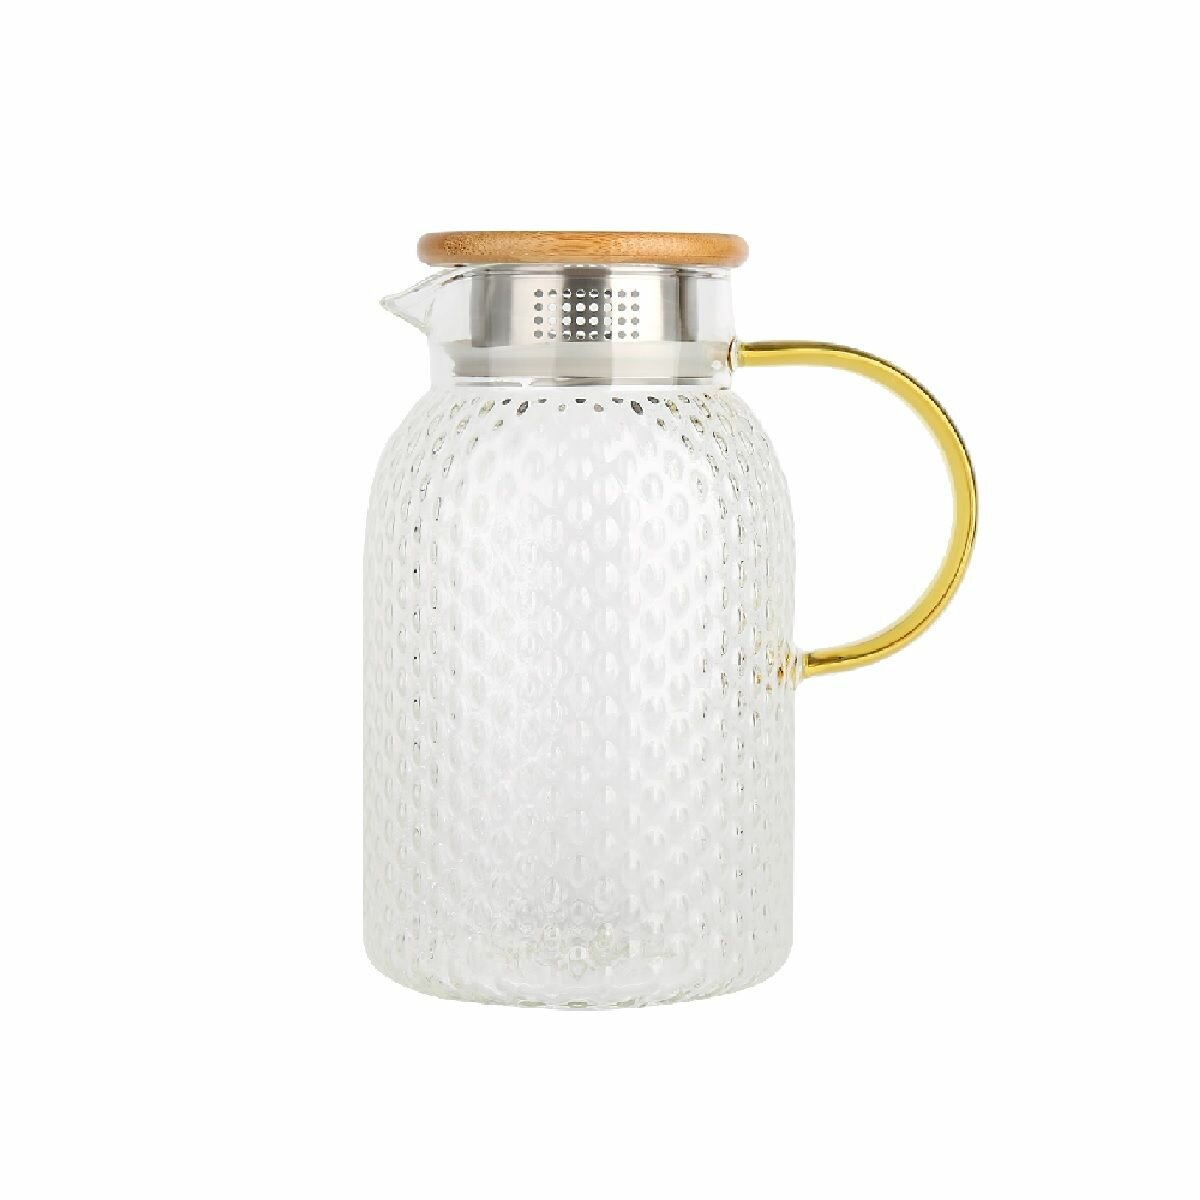 Заварочный чайник-кувшин стеклянный с фильтром 15 литра Rashel